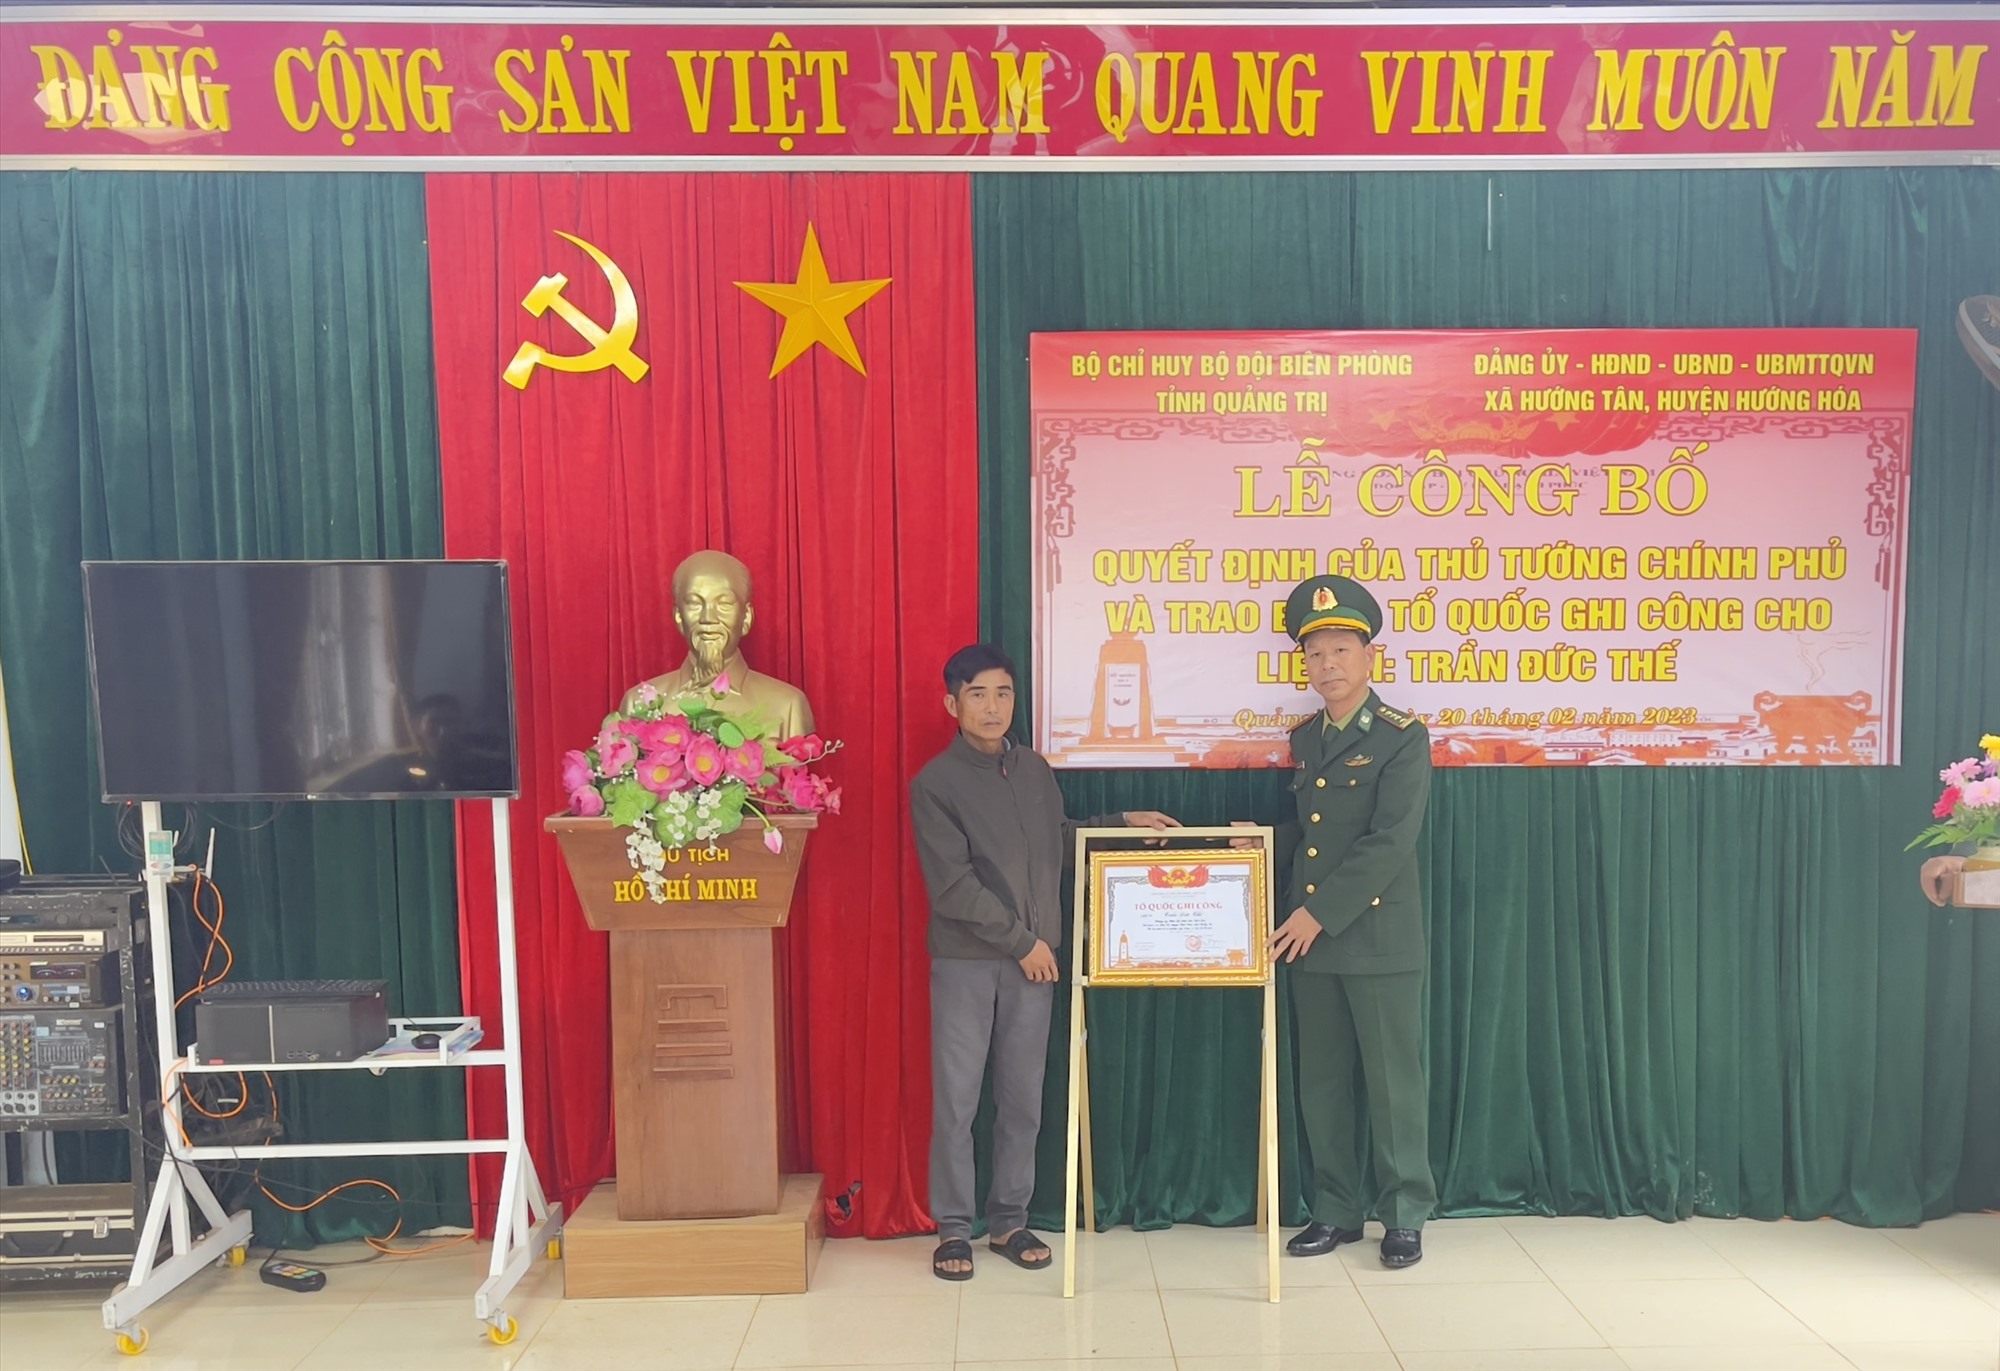 Đại tá  Ngô Xuân Thường, Phó chính ủy BĐBP Quảng Trị đã trao bằng “tổ quốc ghi công” cho gia đình liệt sĩ Trần Đức Thế.